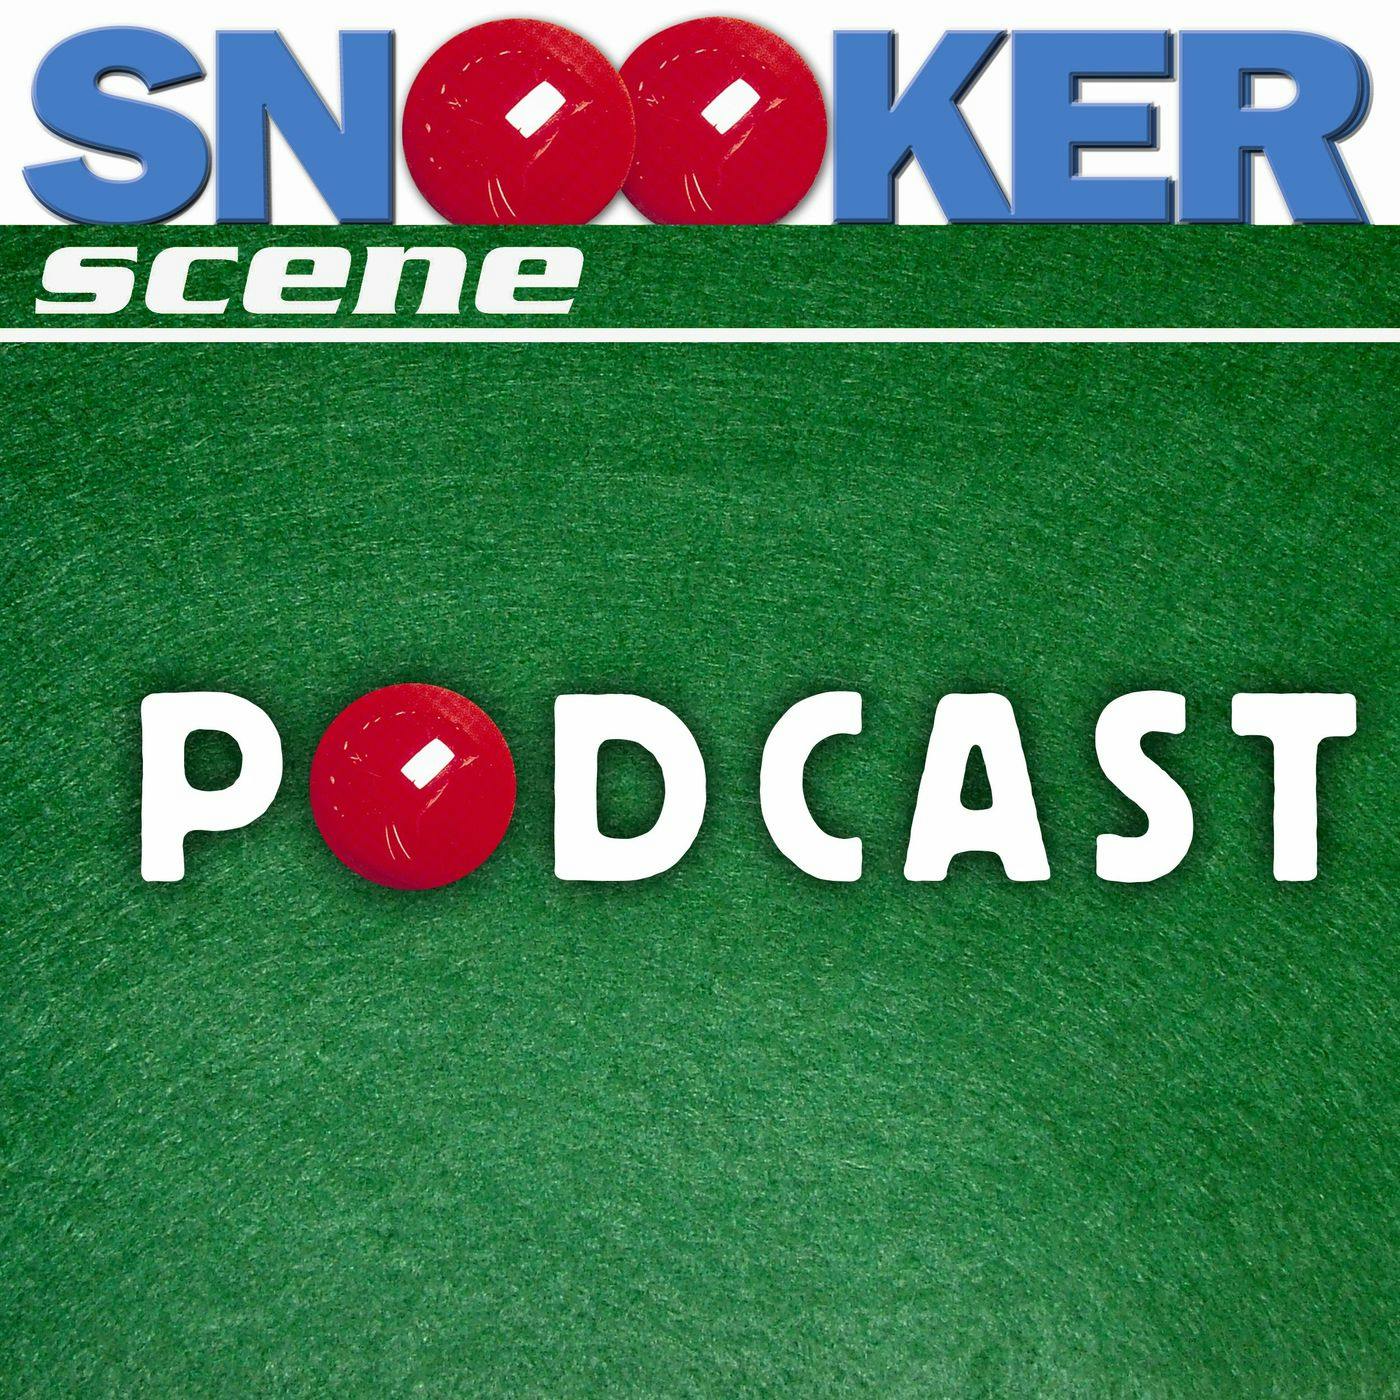 Snooker Scene Podcast episode 161 - Steve Dawson